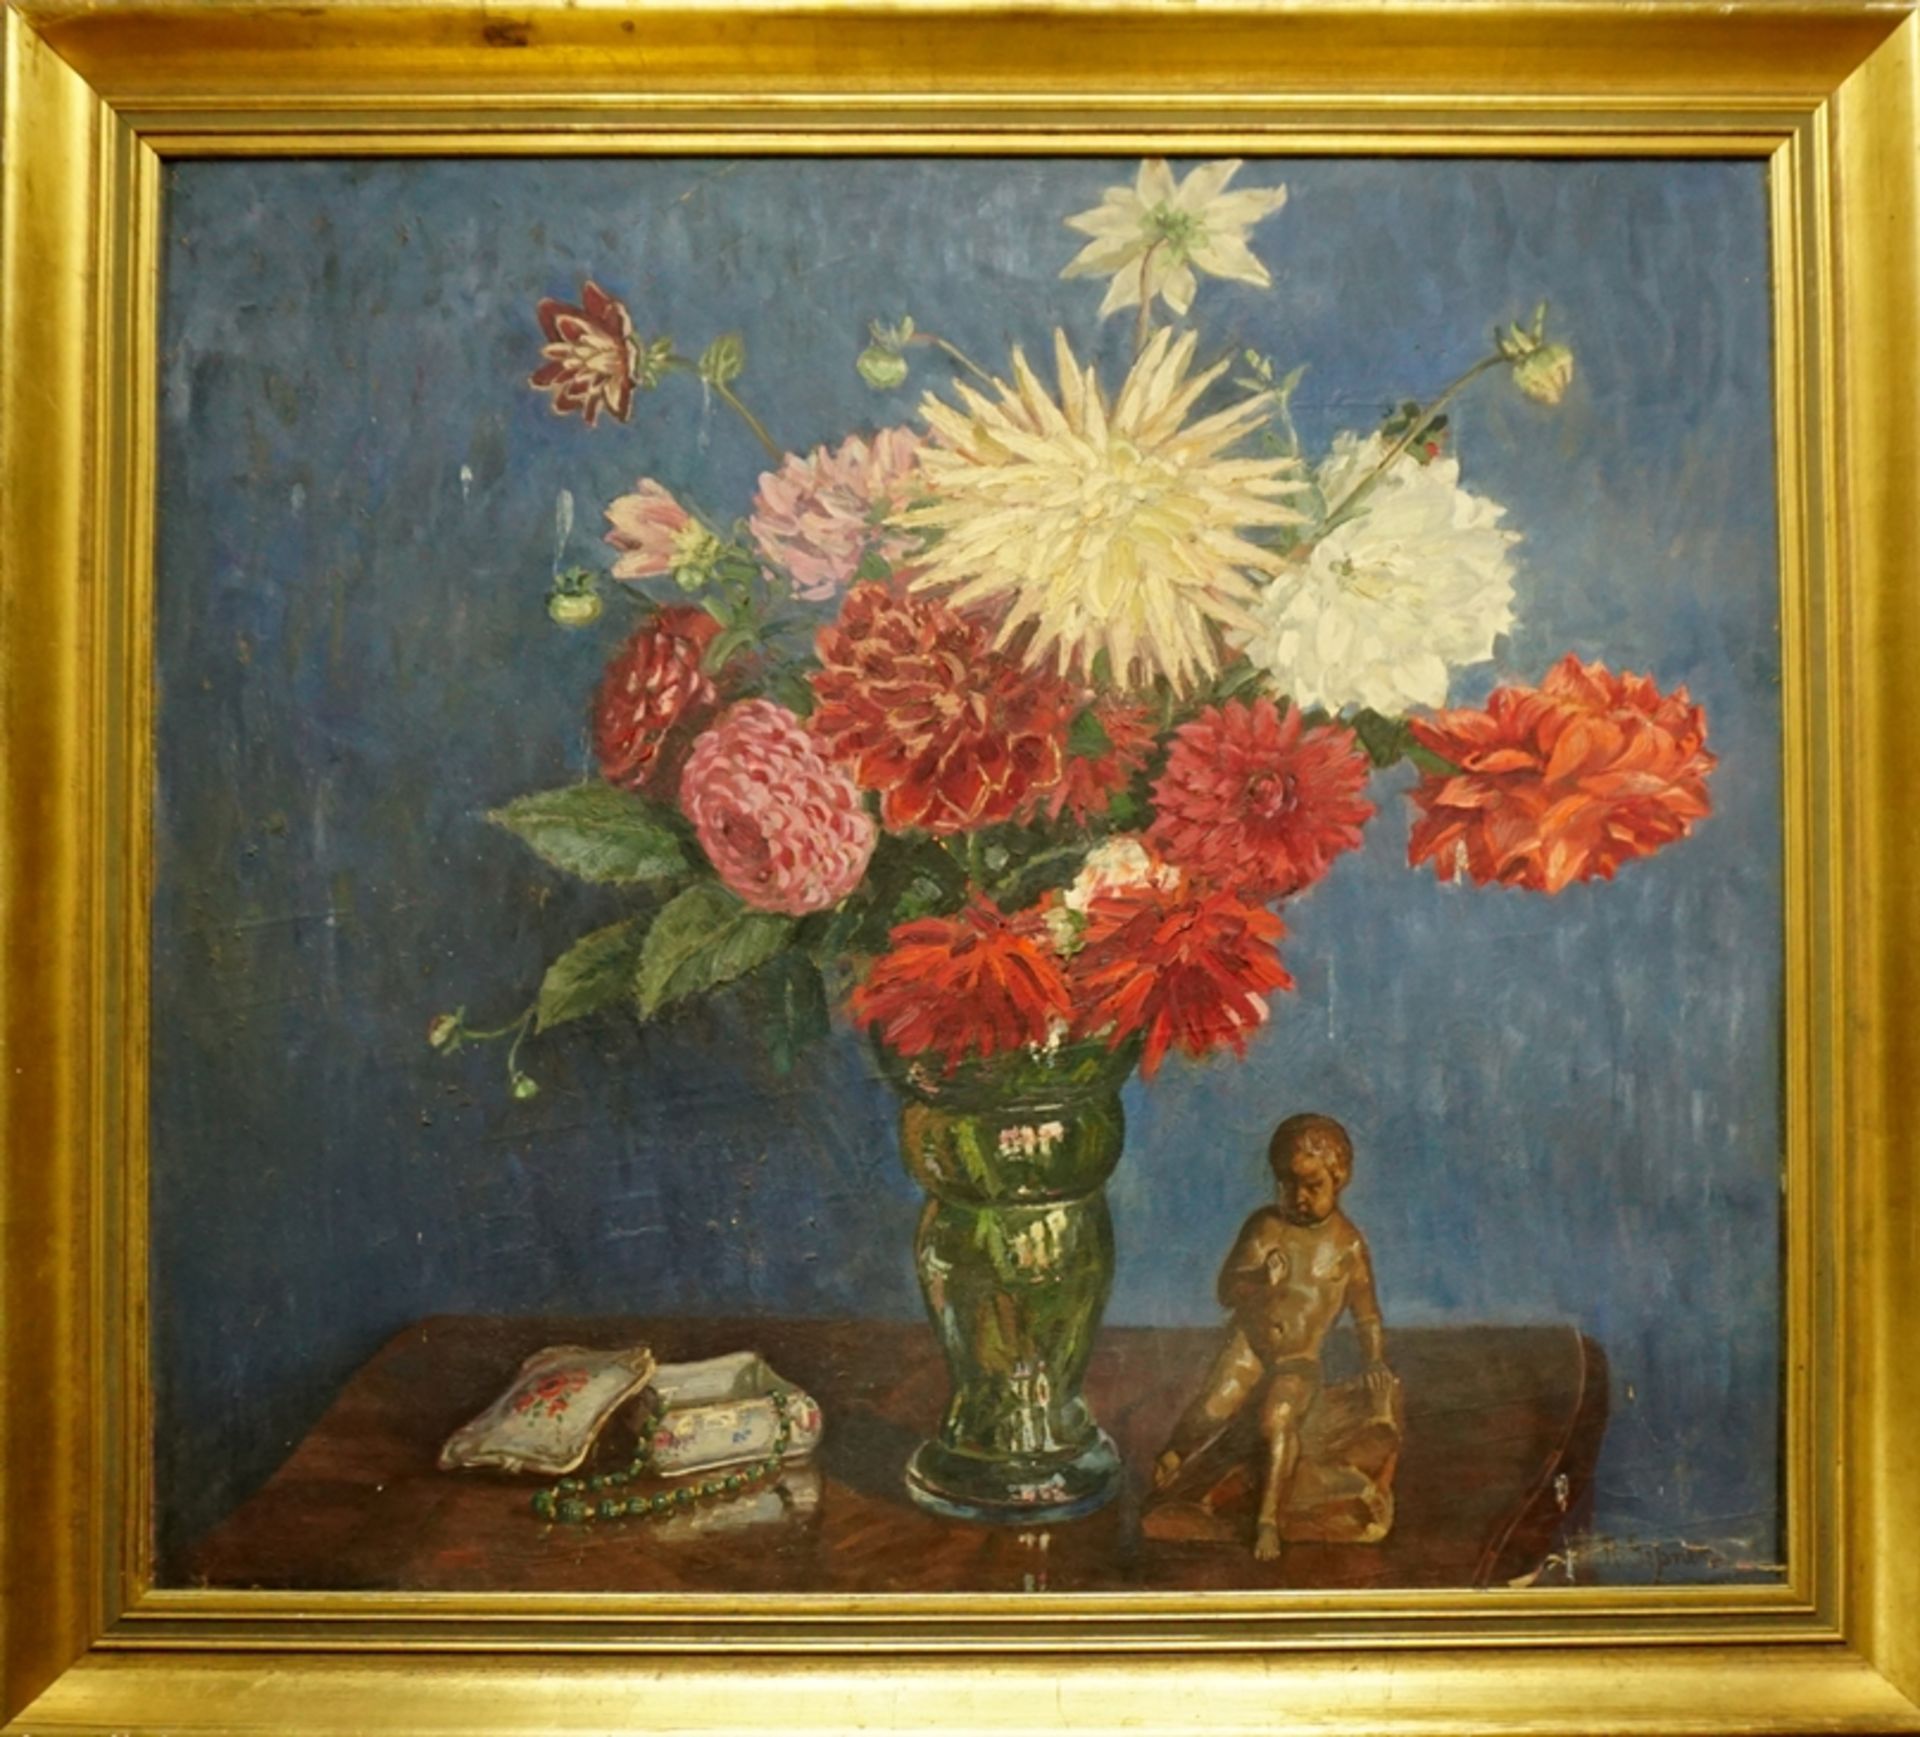 Robert Geßner (1889, Venedig -1973, Born/Darß) "Großes Blumenstillleben", Öl/Hartfaser